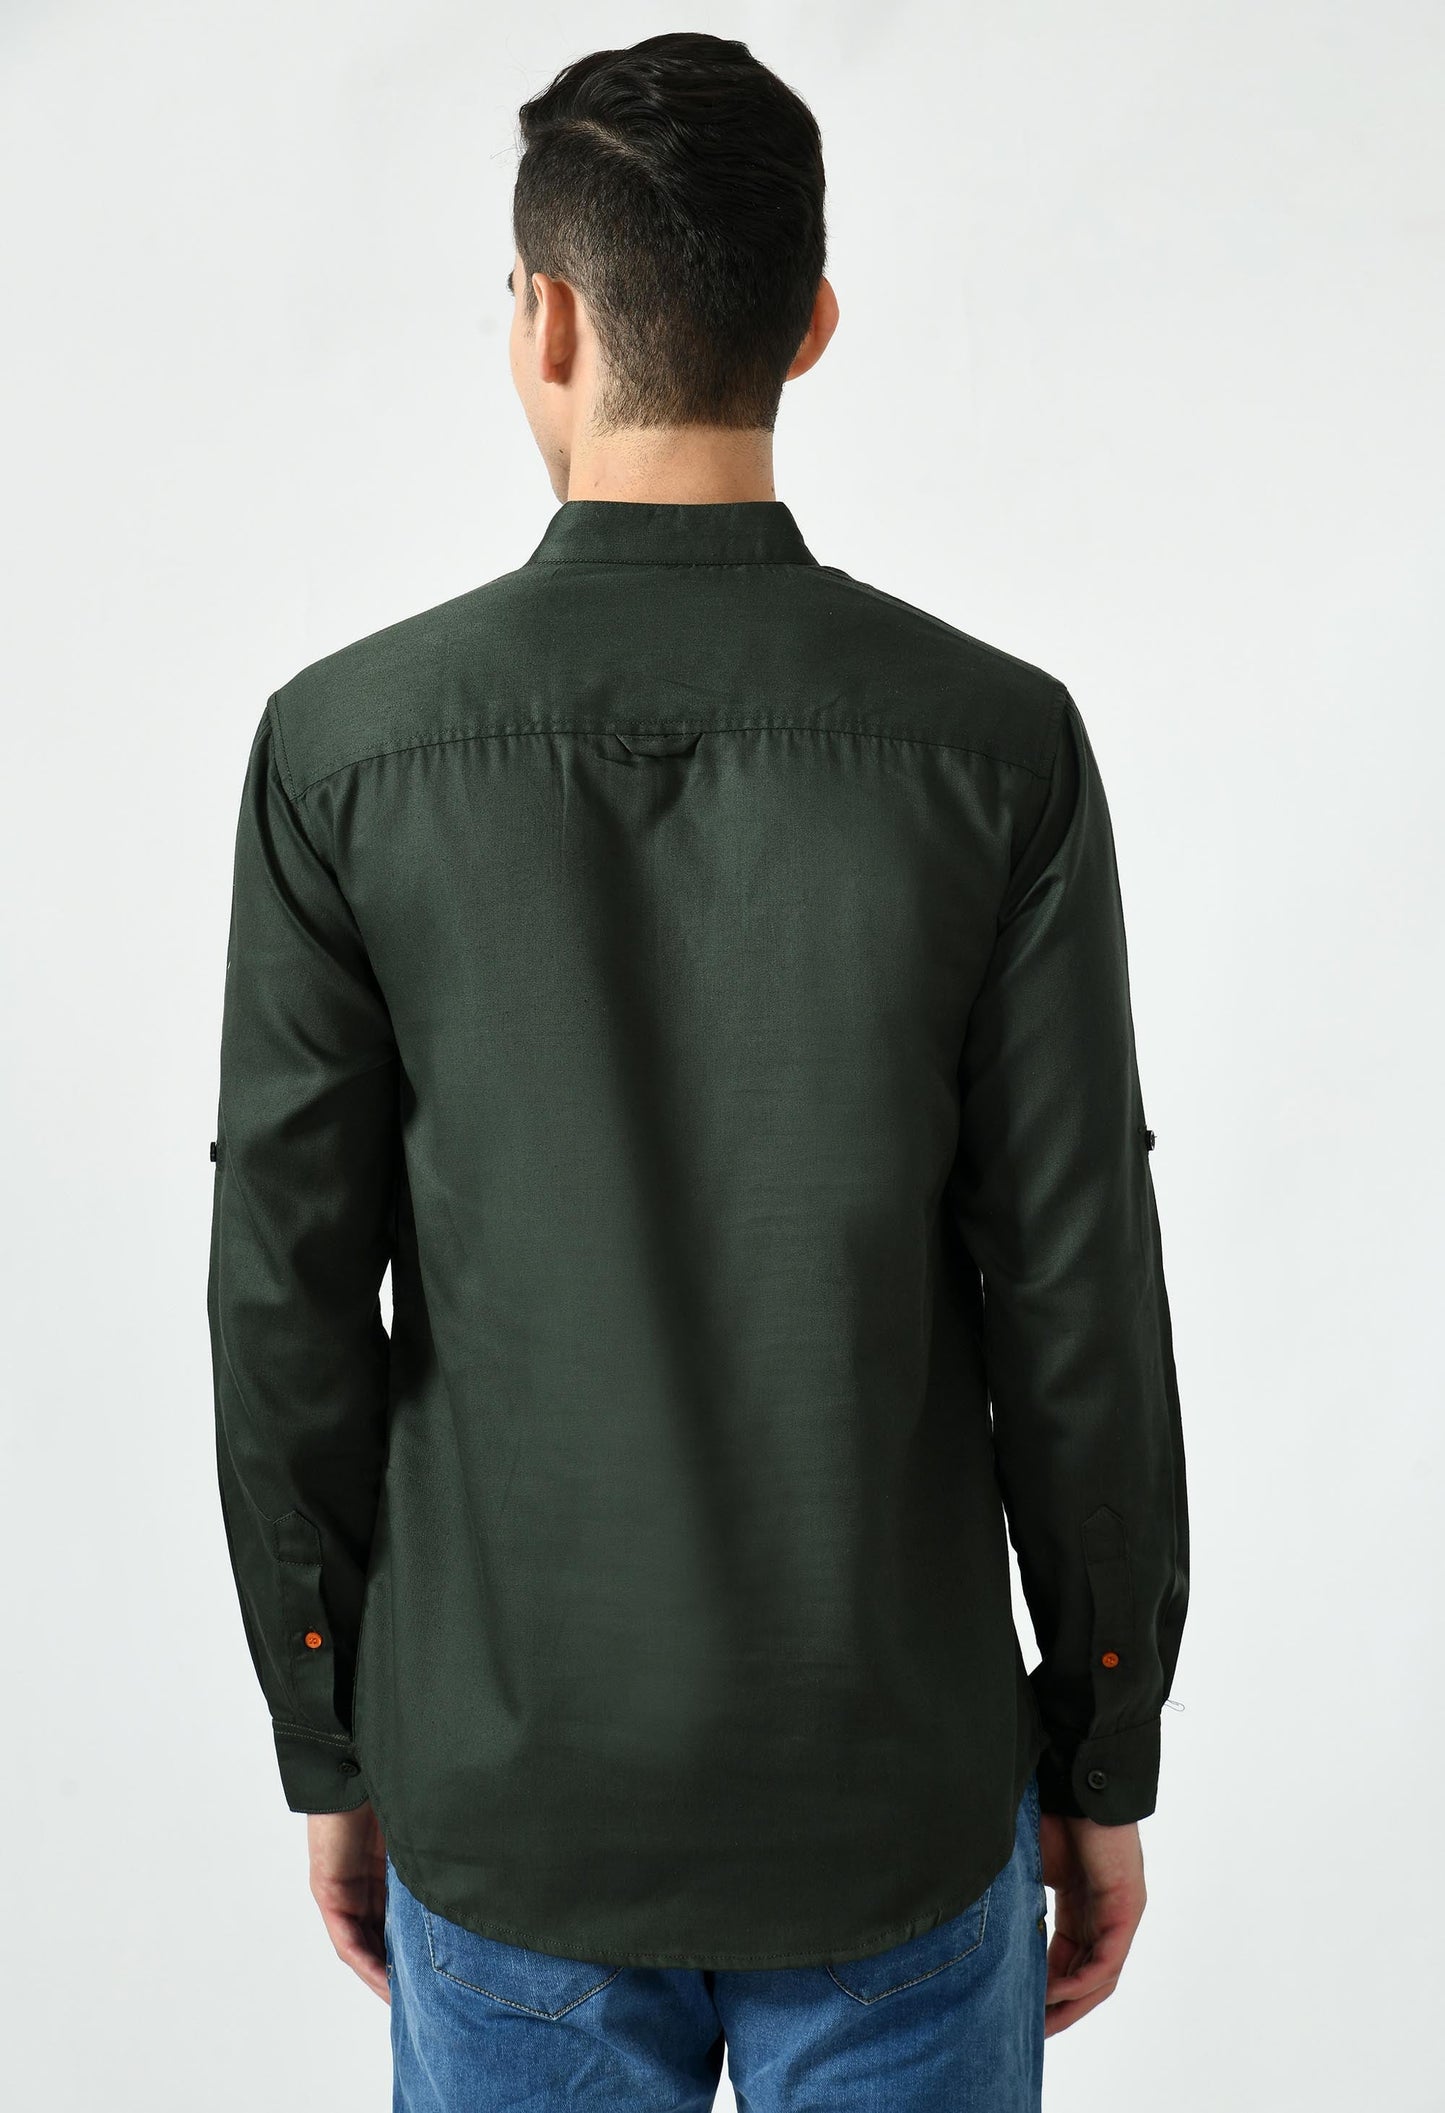 Full Sleeve Cotton Spread Collar Short Kurta for Men - Dark Green